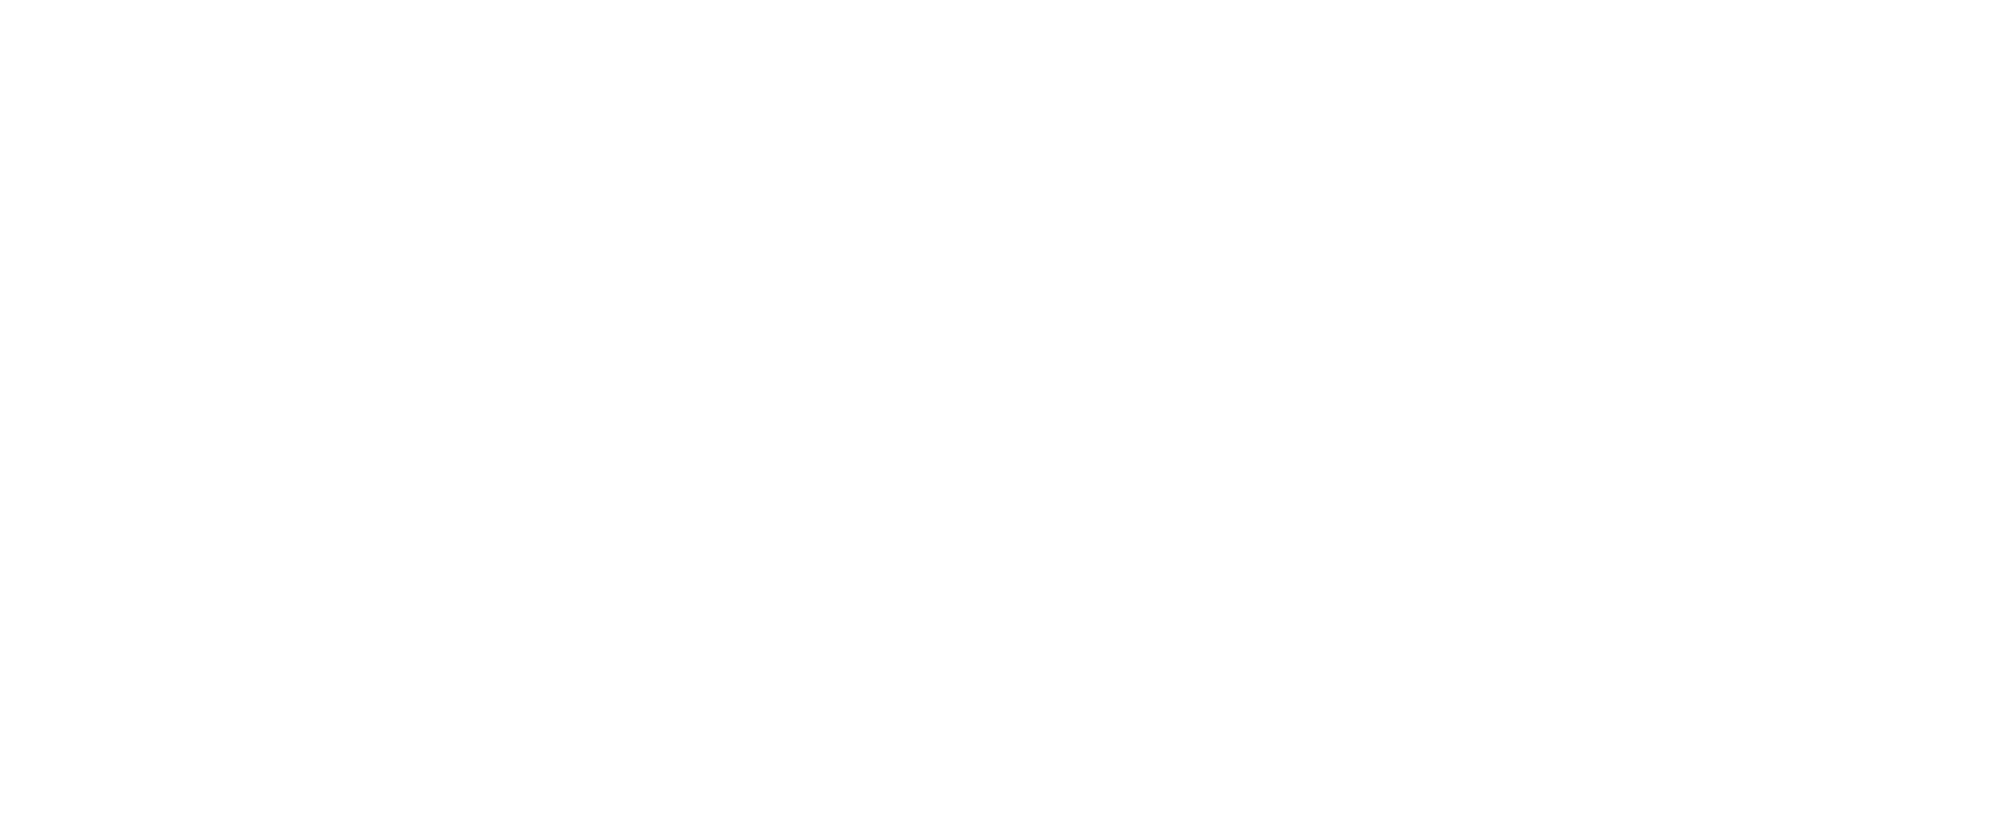 KYKLO Logo